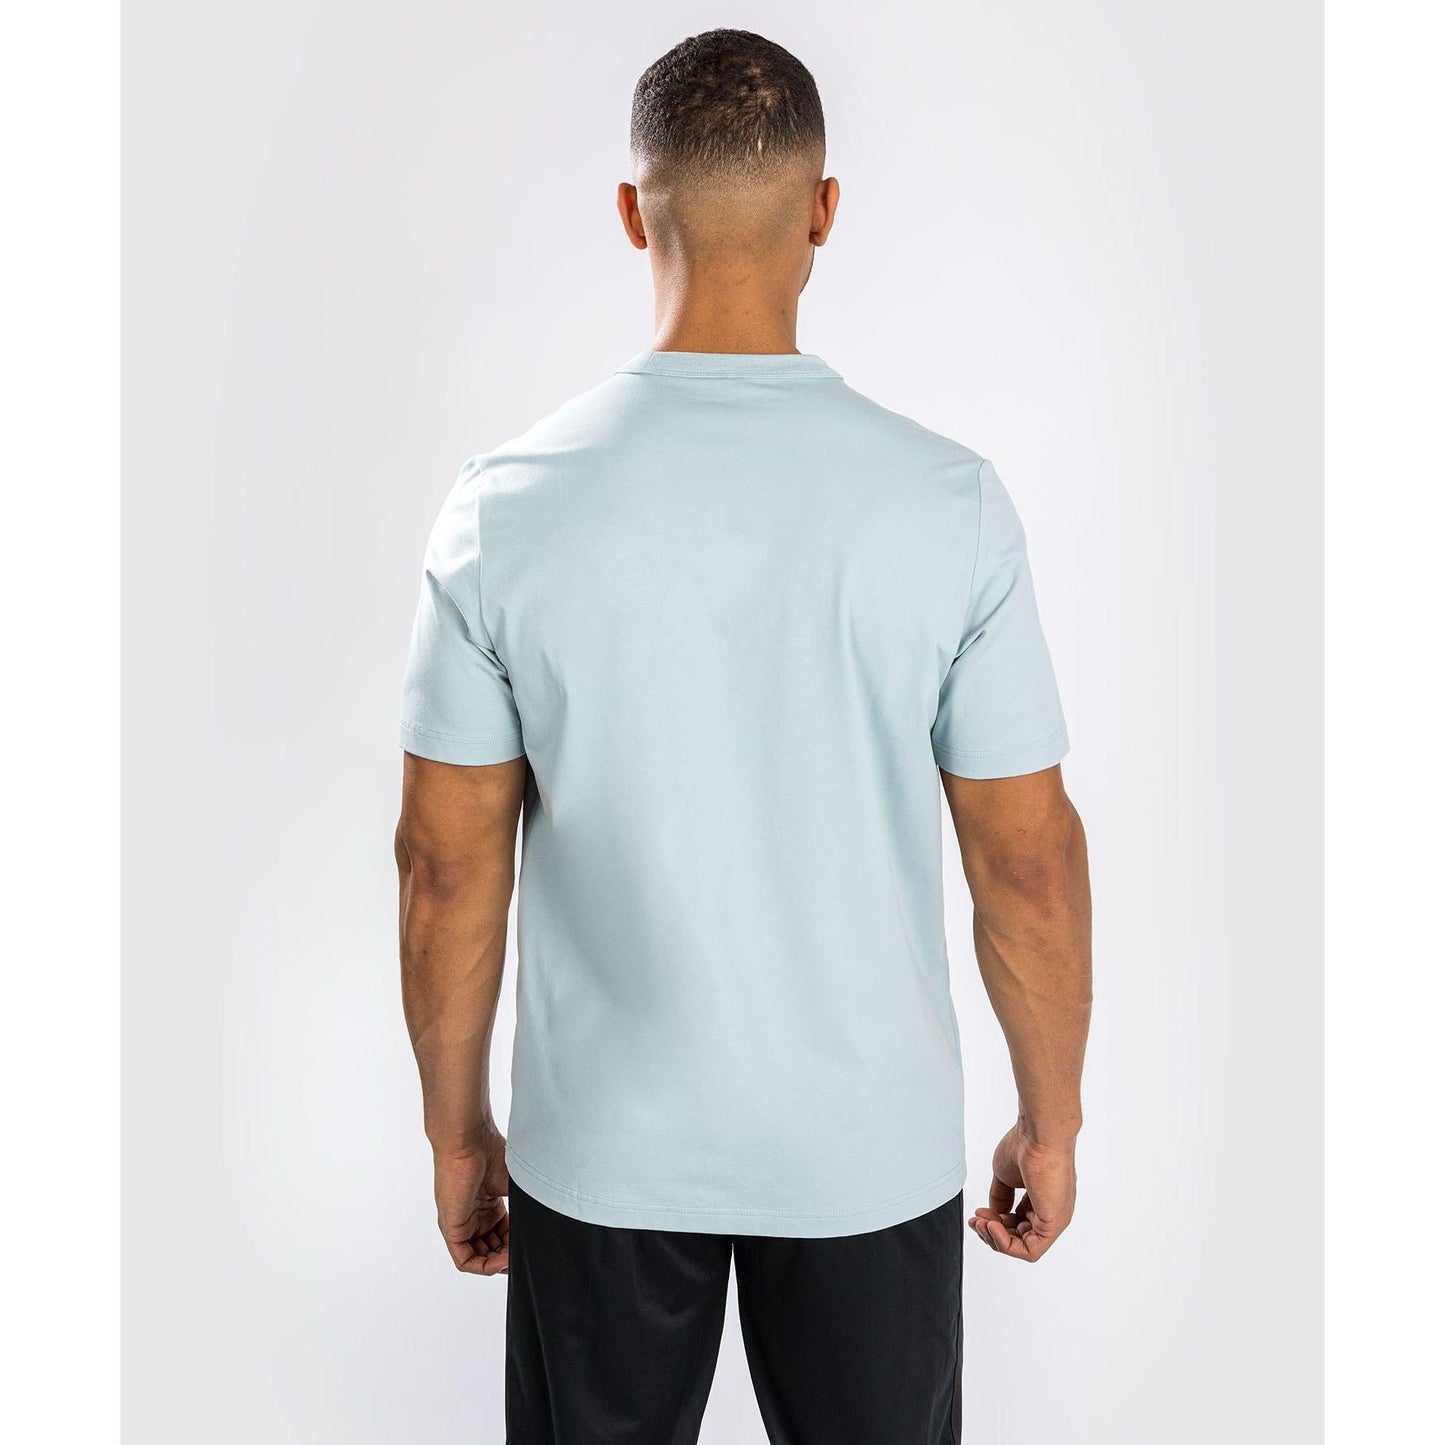 Venum Classic T shirt - Clearwater Blue